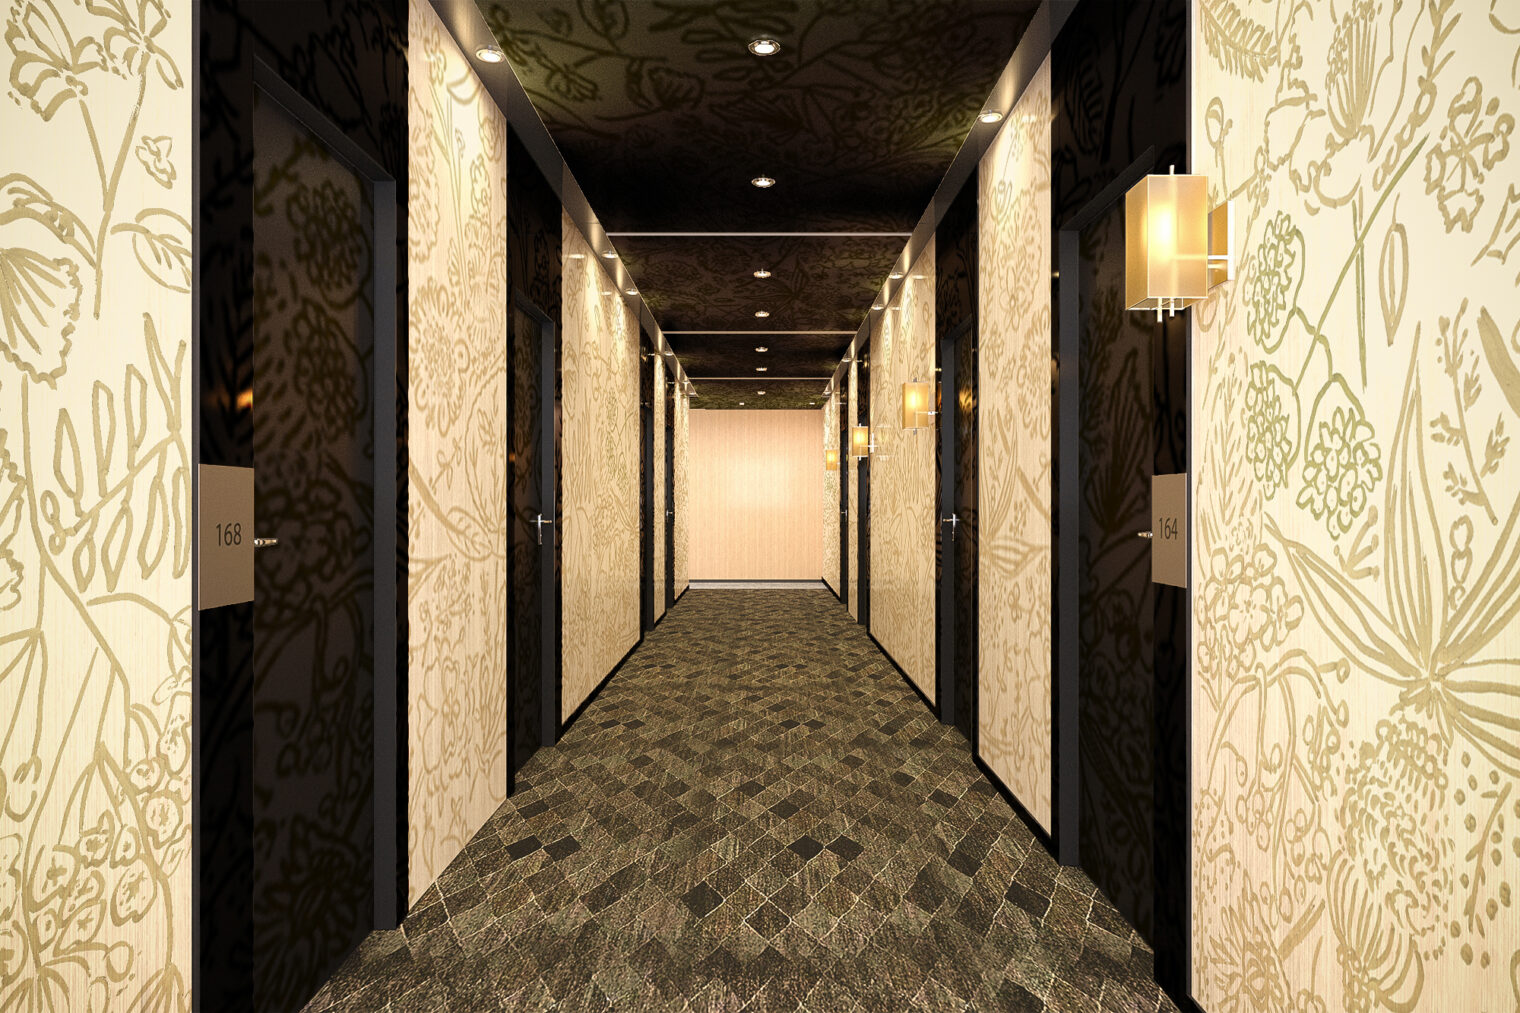 ホテル共用部の廊下部分を大胆に装飾するボタニカルなモチーフが特徴的な壁紙デザイン